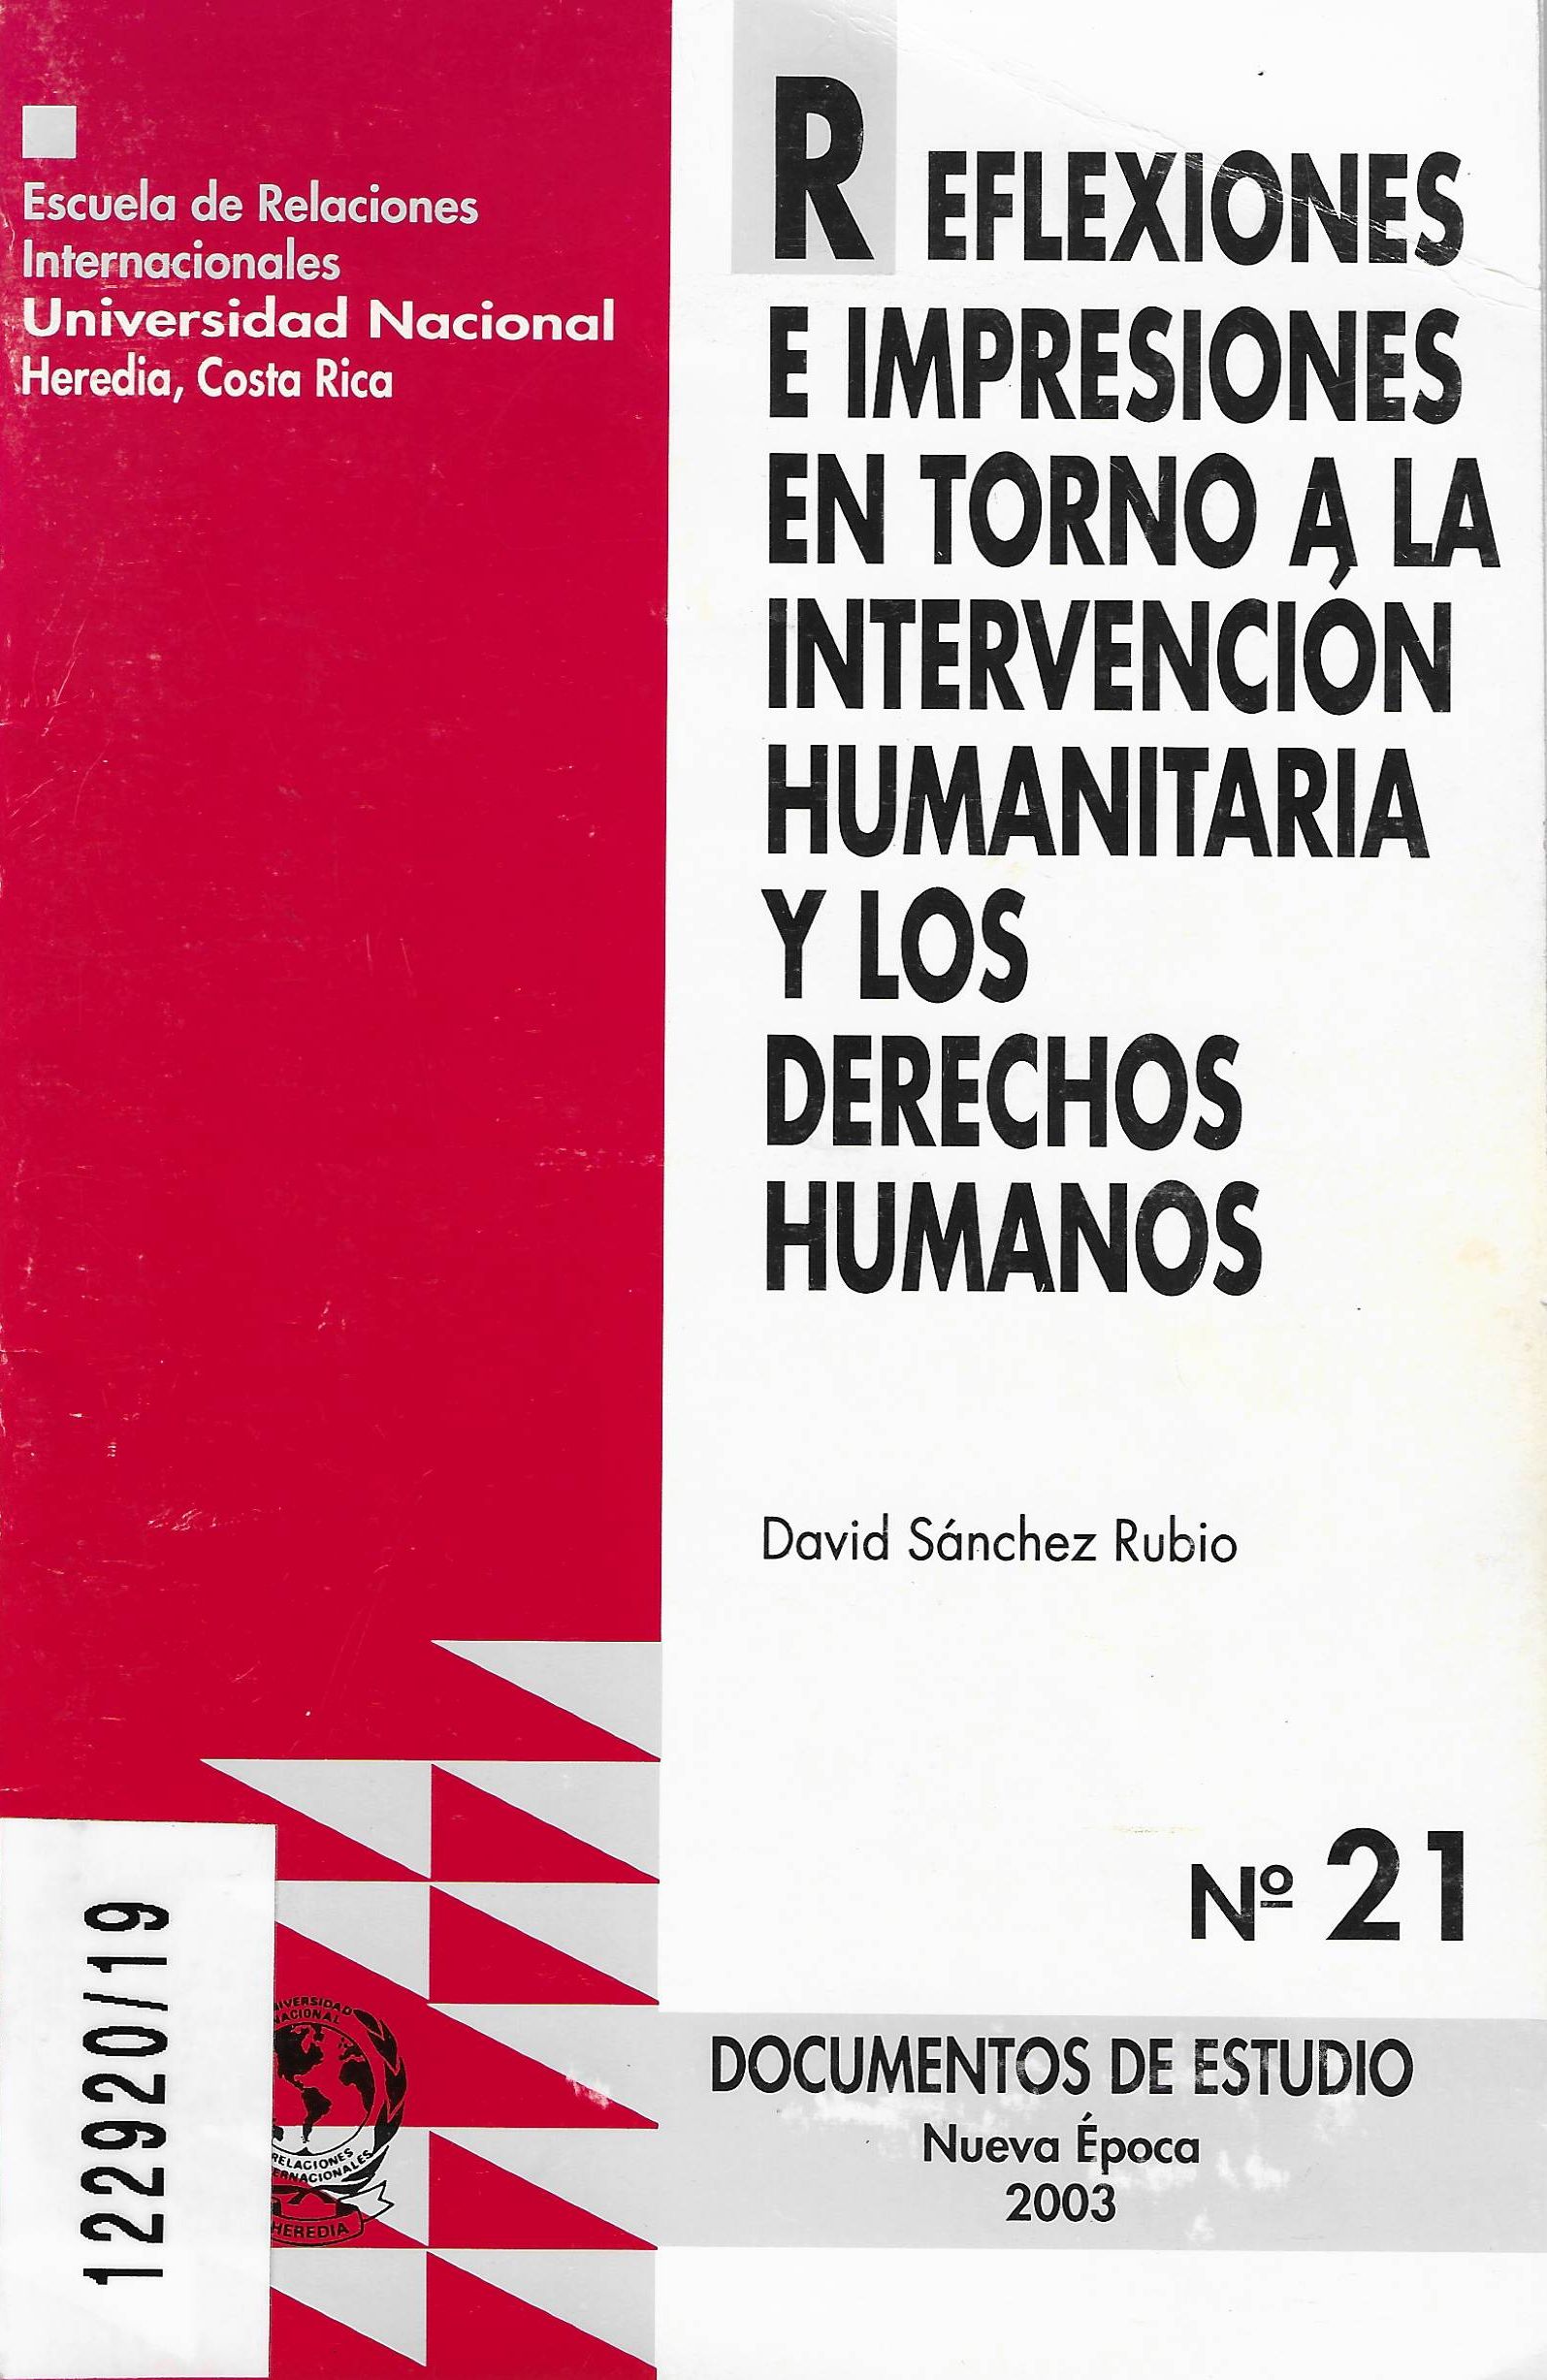 Imagen de portada del libro Reflexiones e impresiones en torno a la intervención hunanitaria y los derechos humanos